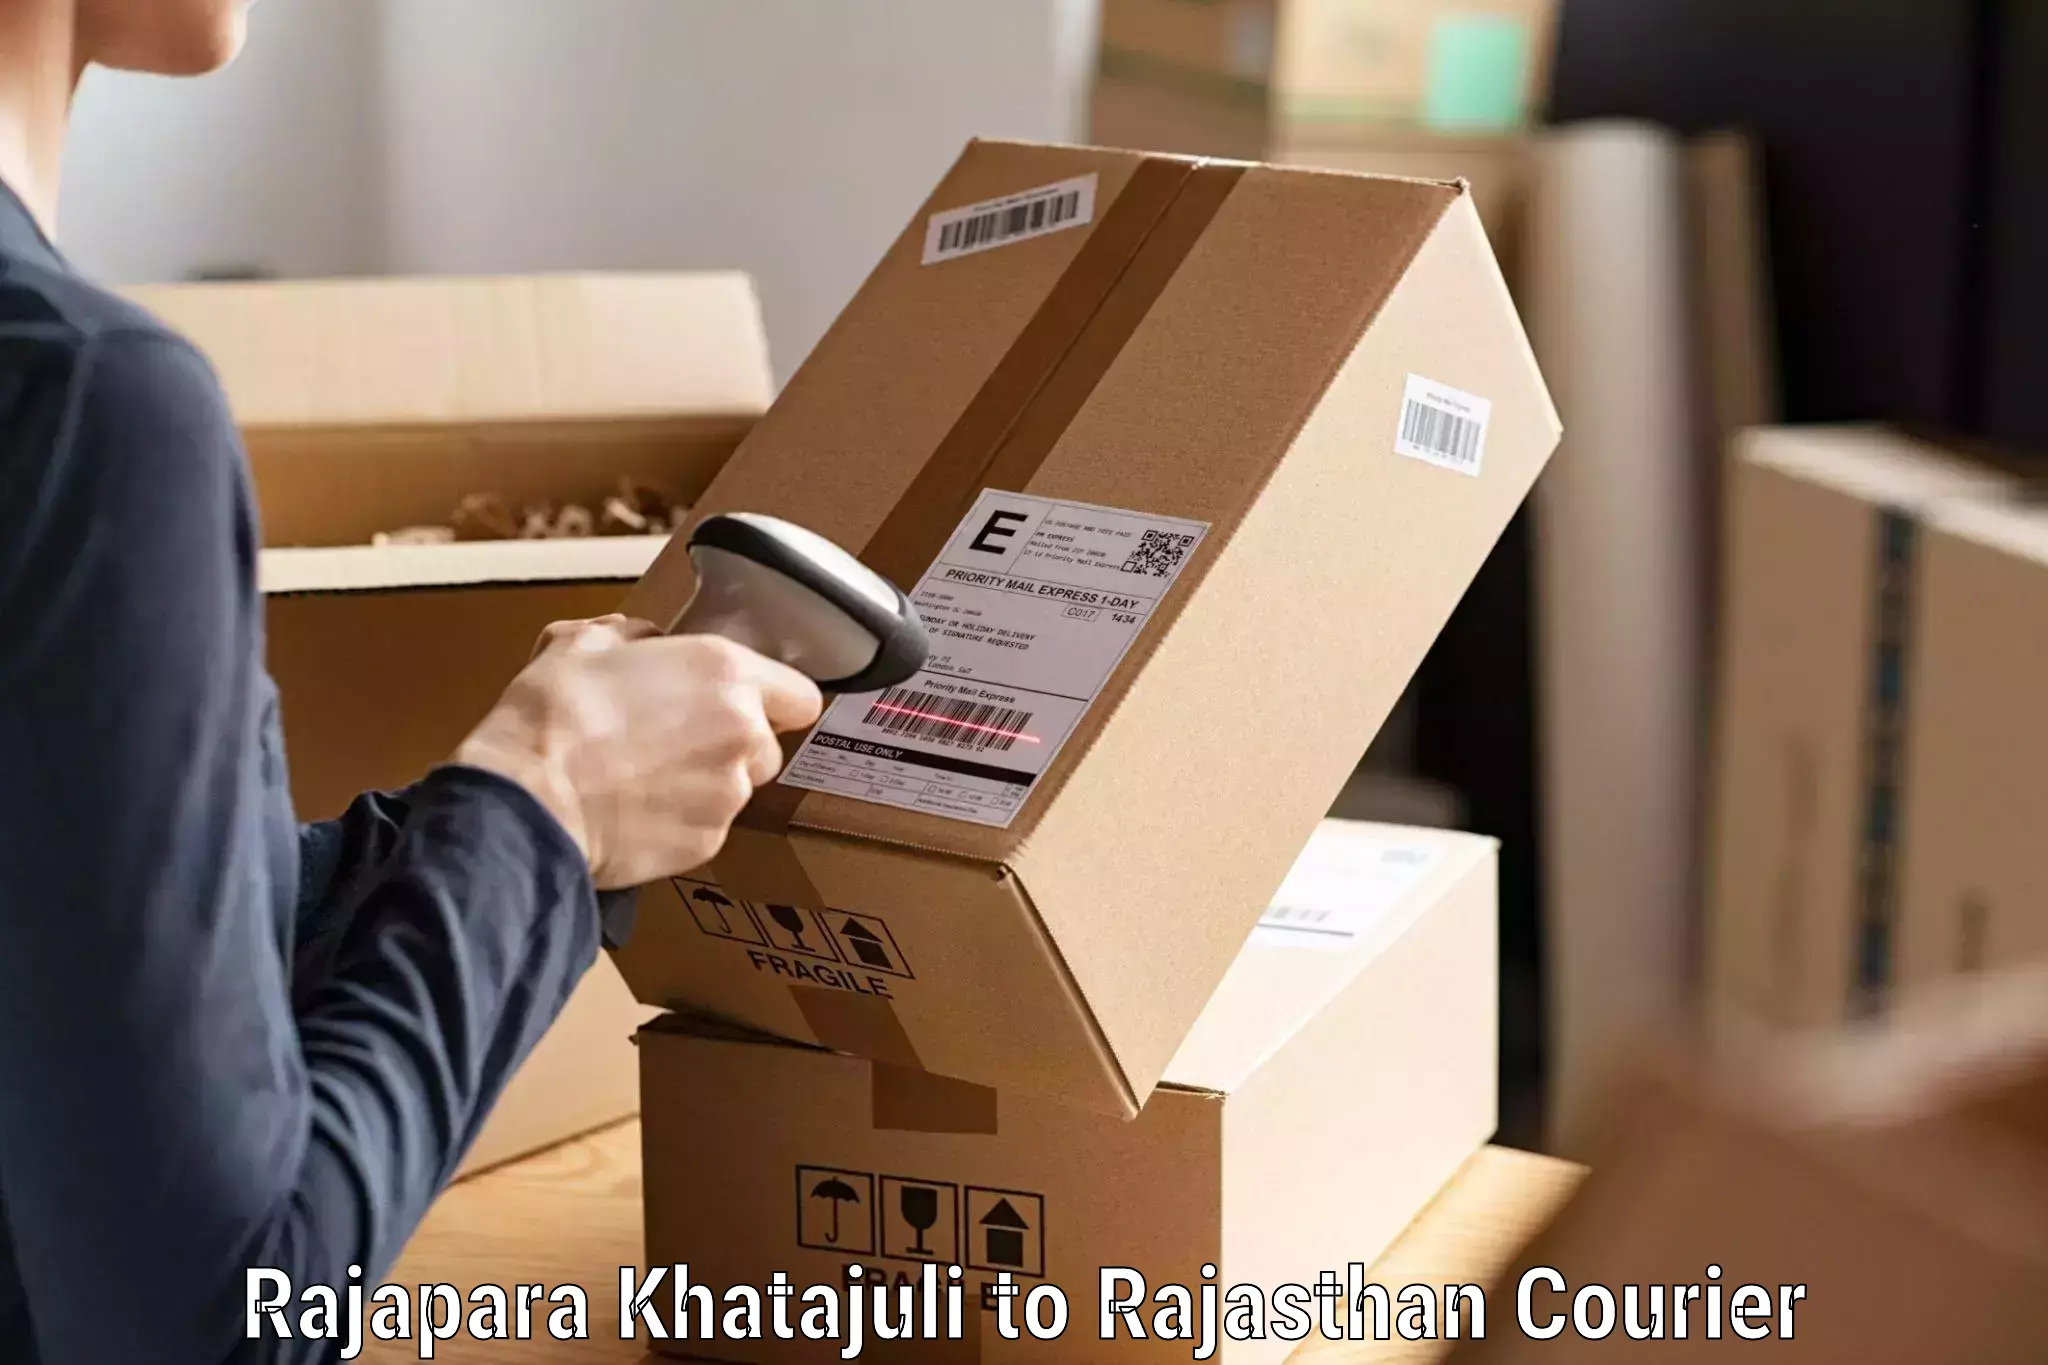 Express courier capabilities Rajapara Khatajuli to Bassi